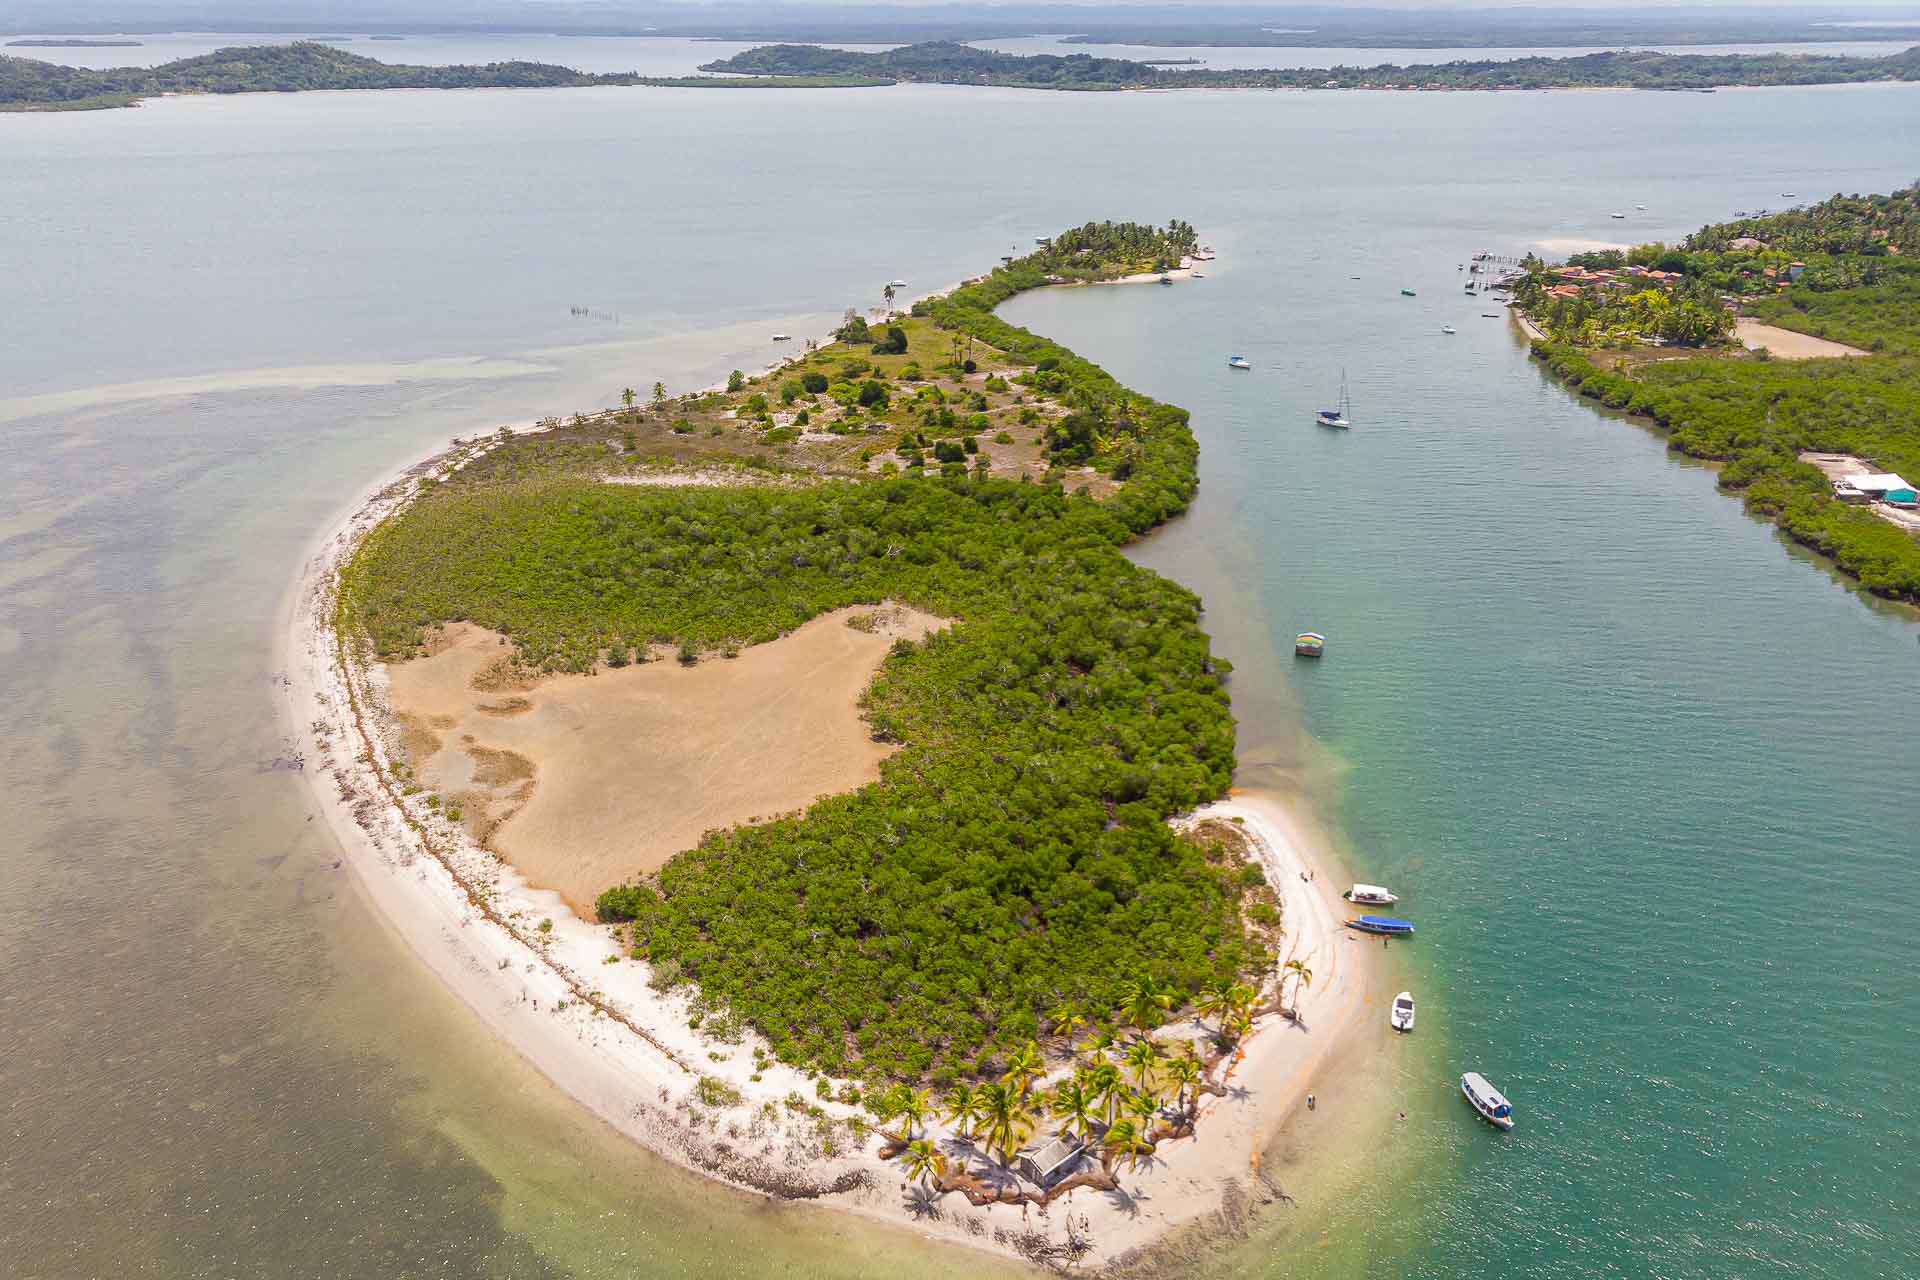 Aerieal view of the Guigo Island in Península do Maraú